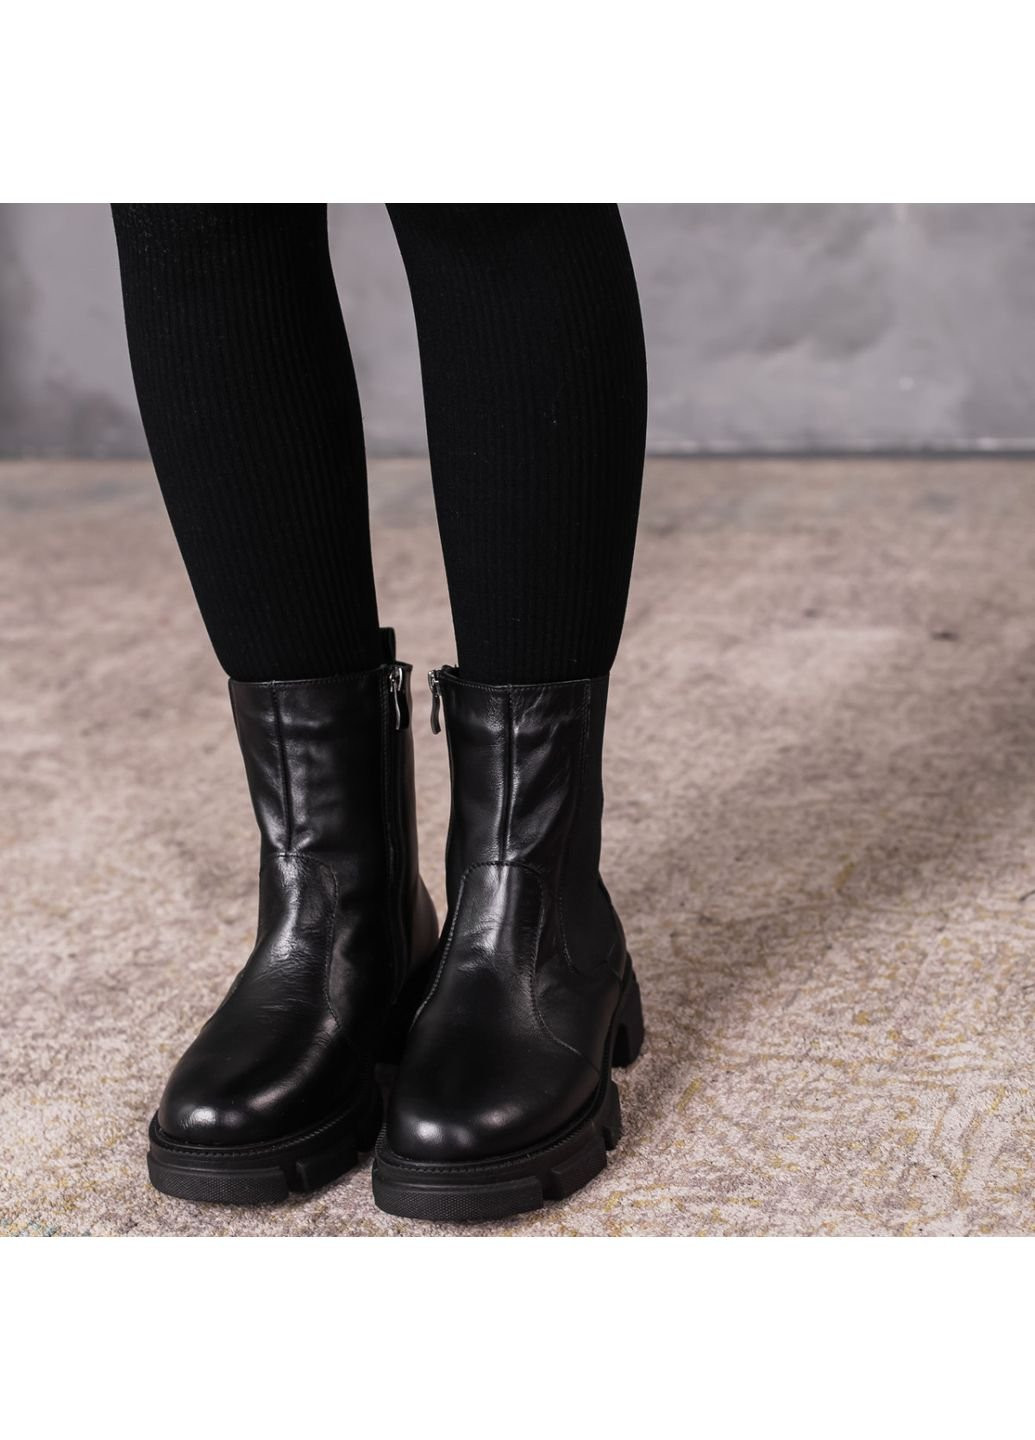 Зимние ботинки женские зимние dizzy 3400 39 25 см черный Fashion